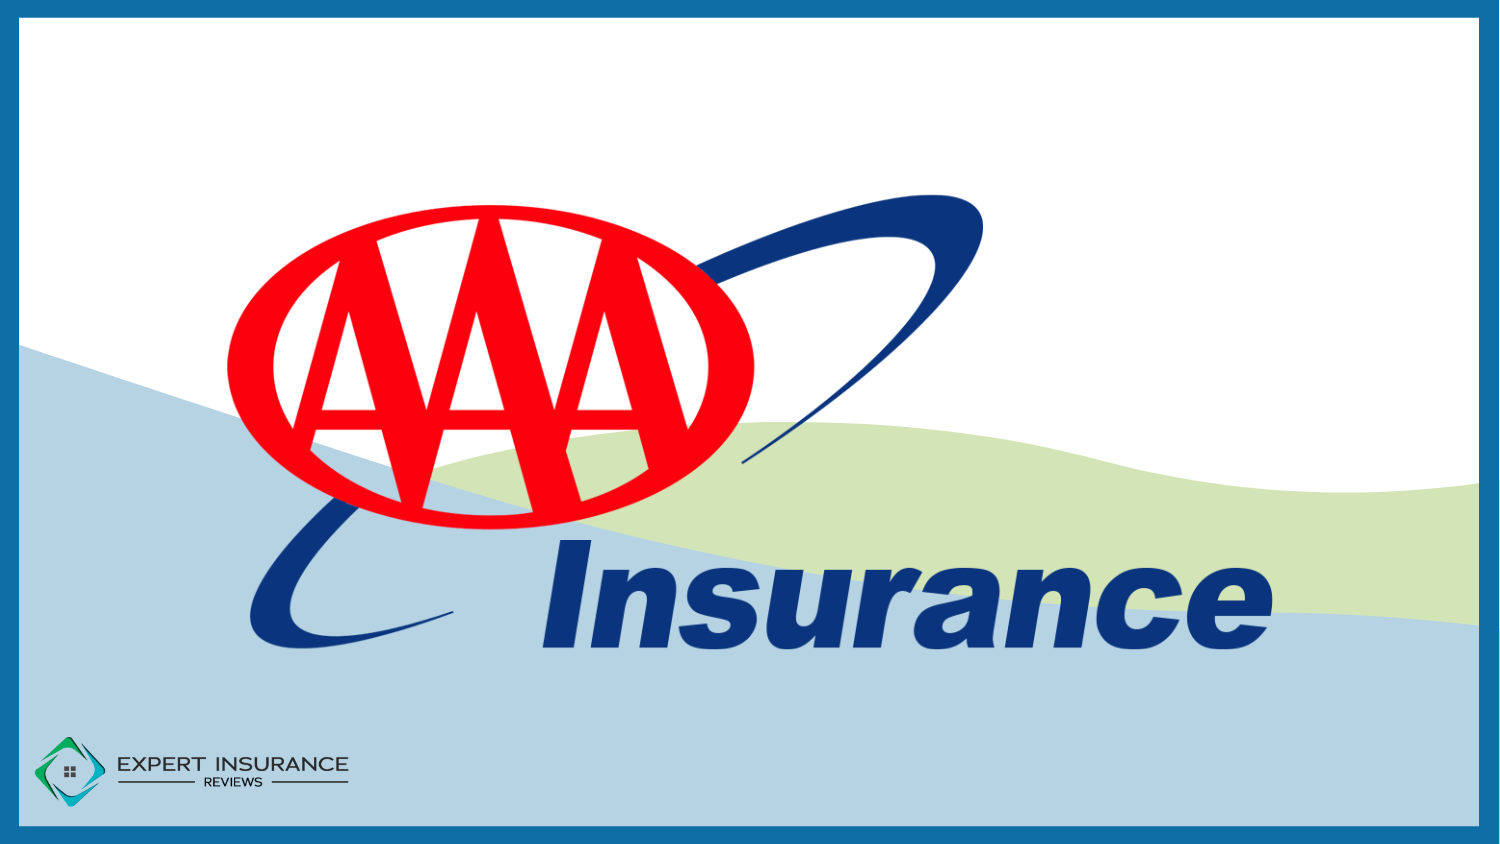 AAA: Best Home Insurance for Seniors